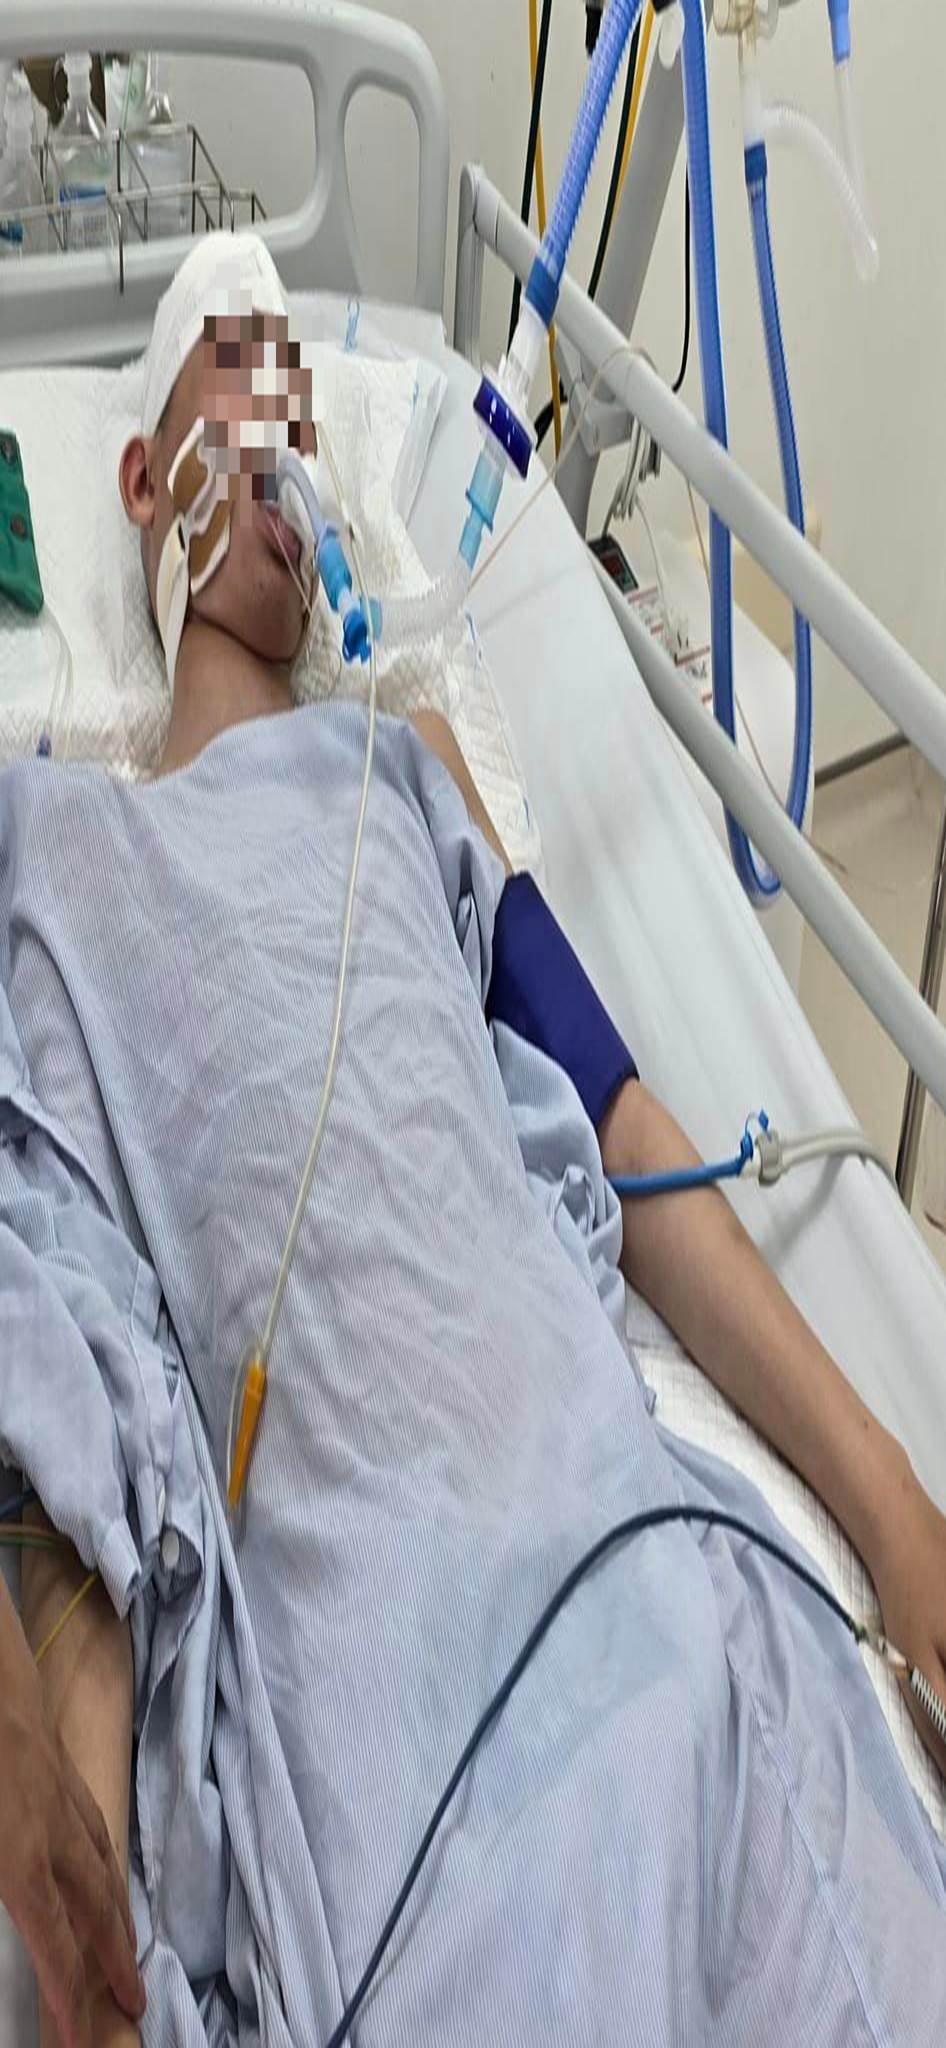 Bé trai lớp 8 bị đánh đến chết não tại Hà Nội: Có thể khởi tố vụ án giết người?-1